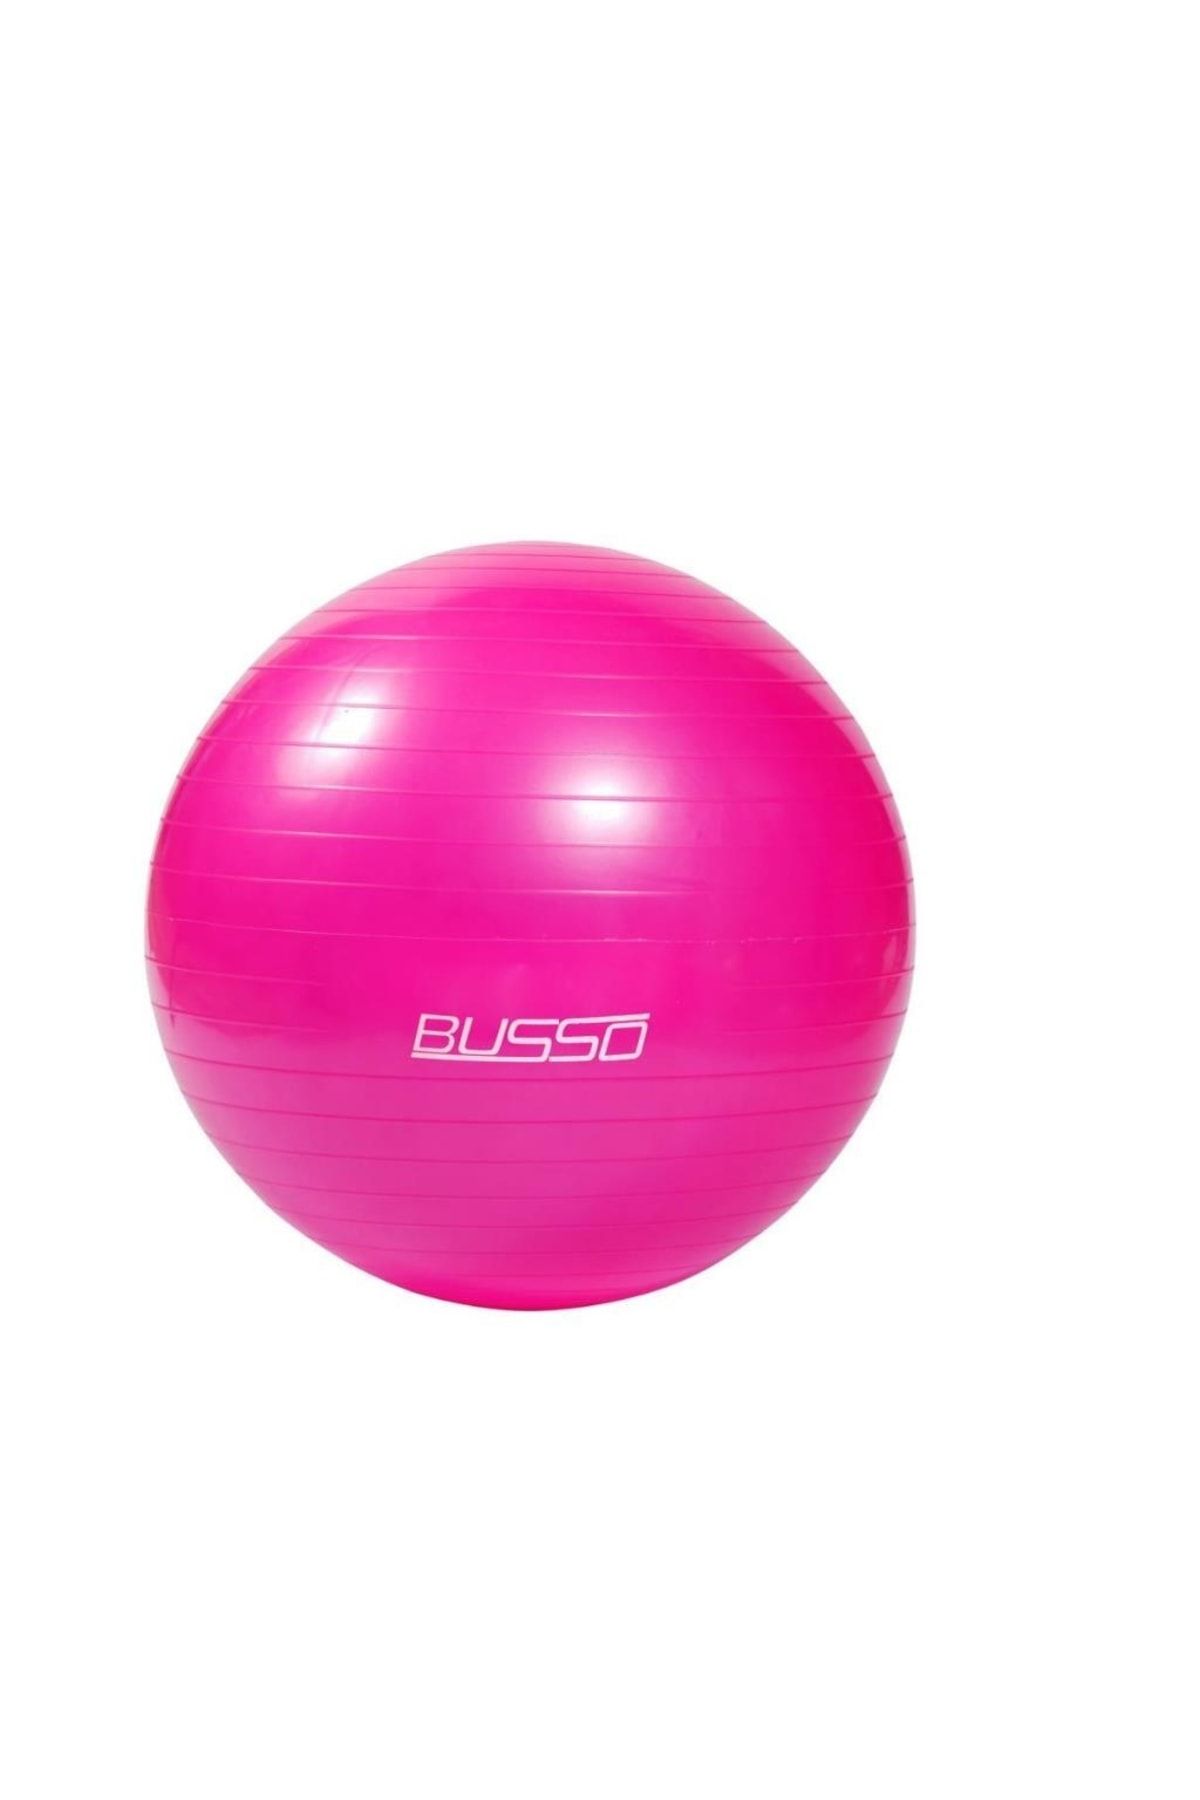 Busso Gym56-55cm Pilates Topu Polybag Fuşya